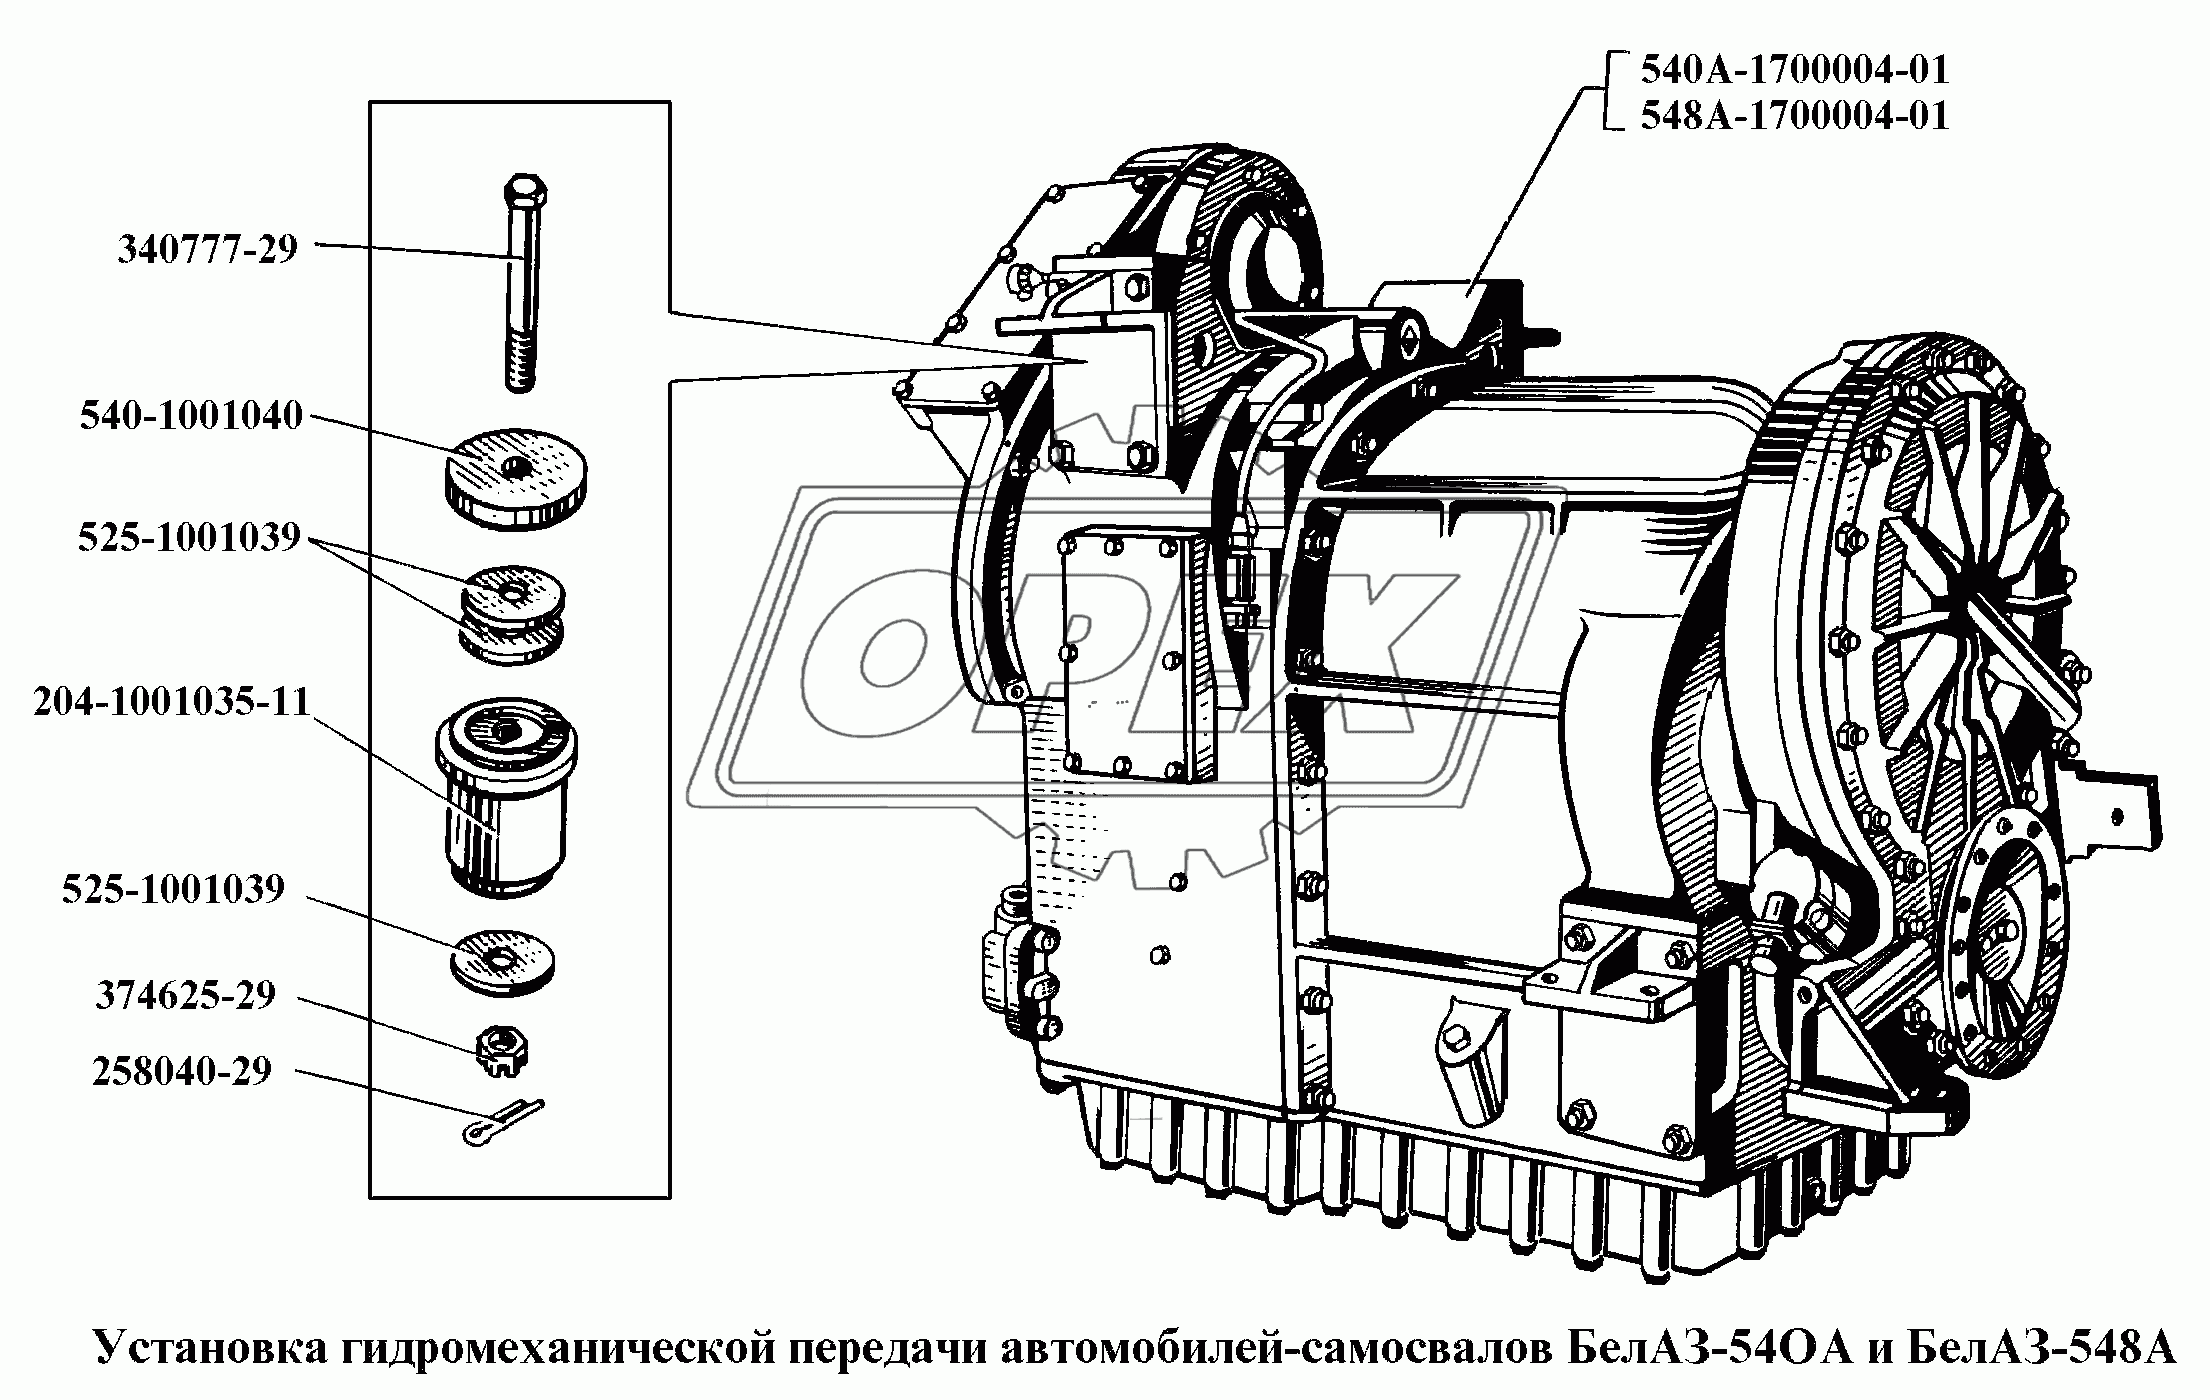 Установка гидромеханической передачи автомобилей-самосвалов БелАЗ-540А и БелАЗ-548А